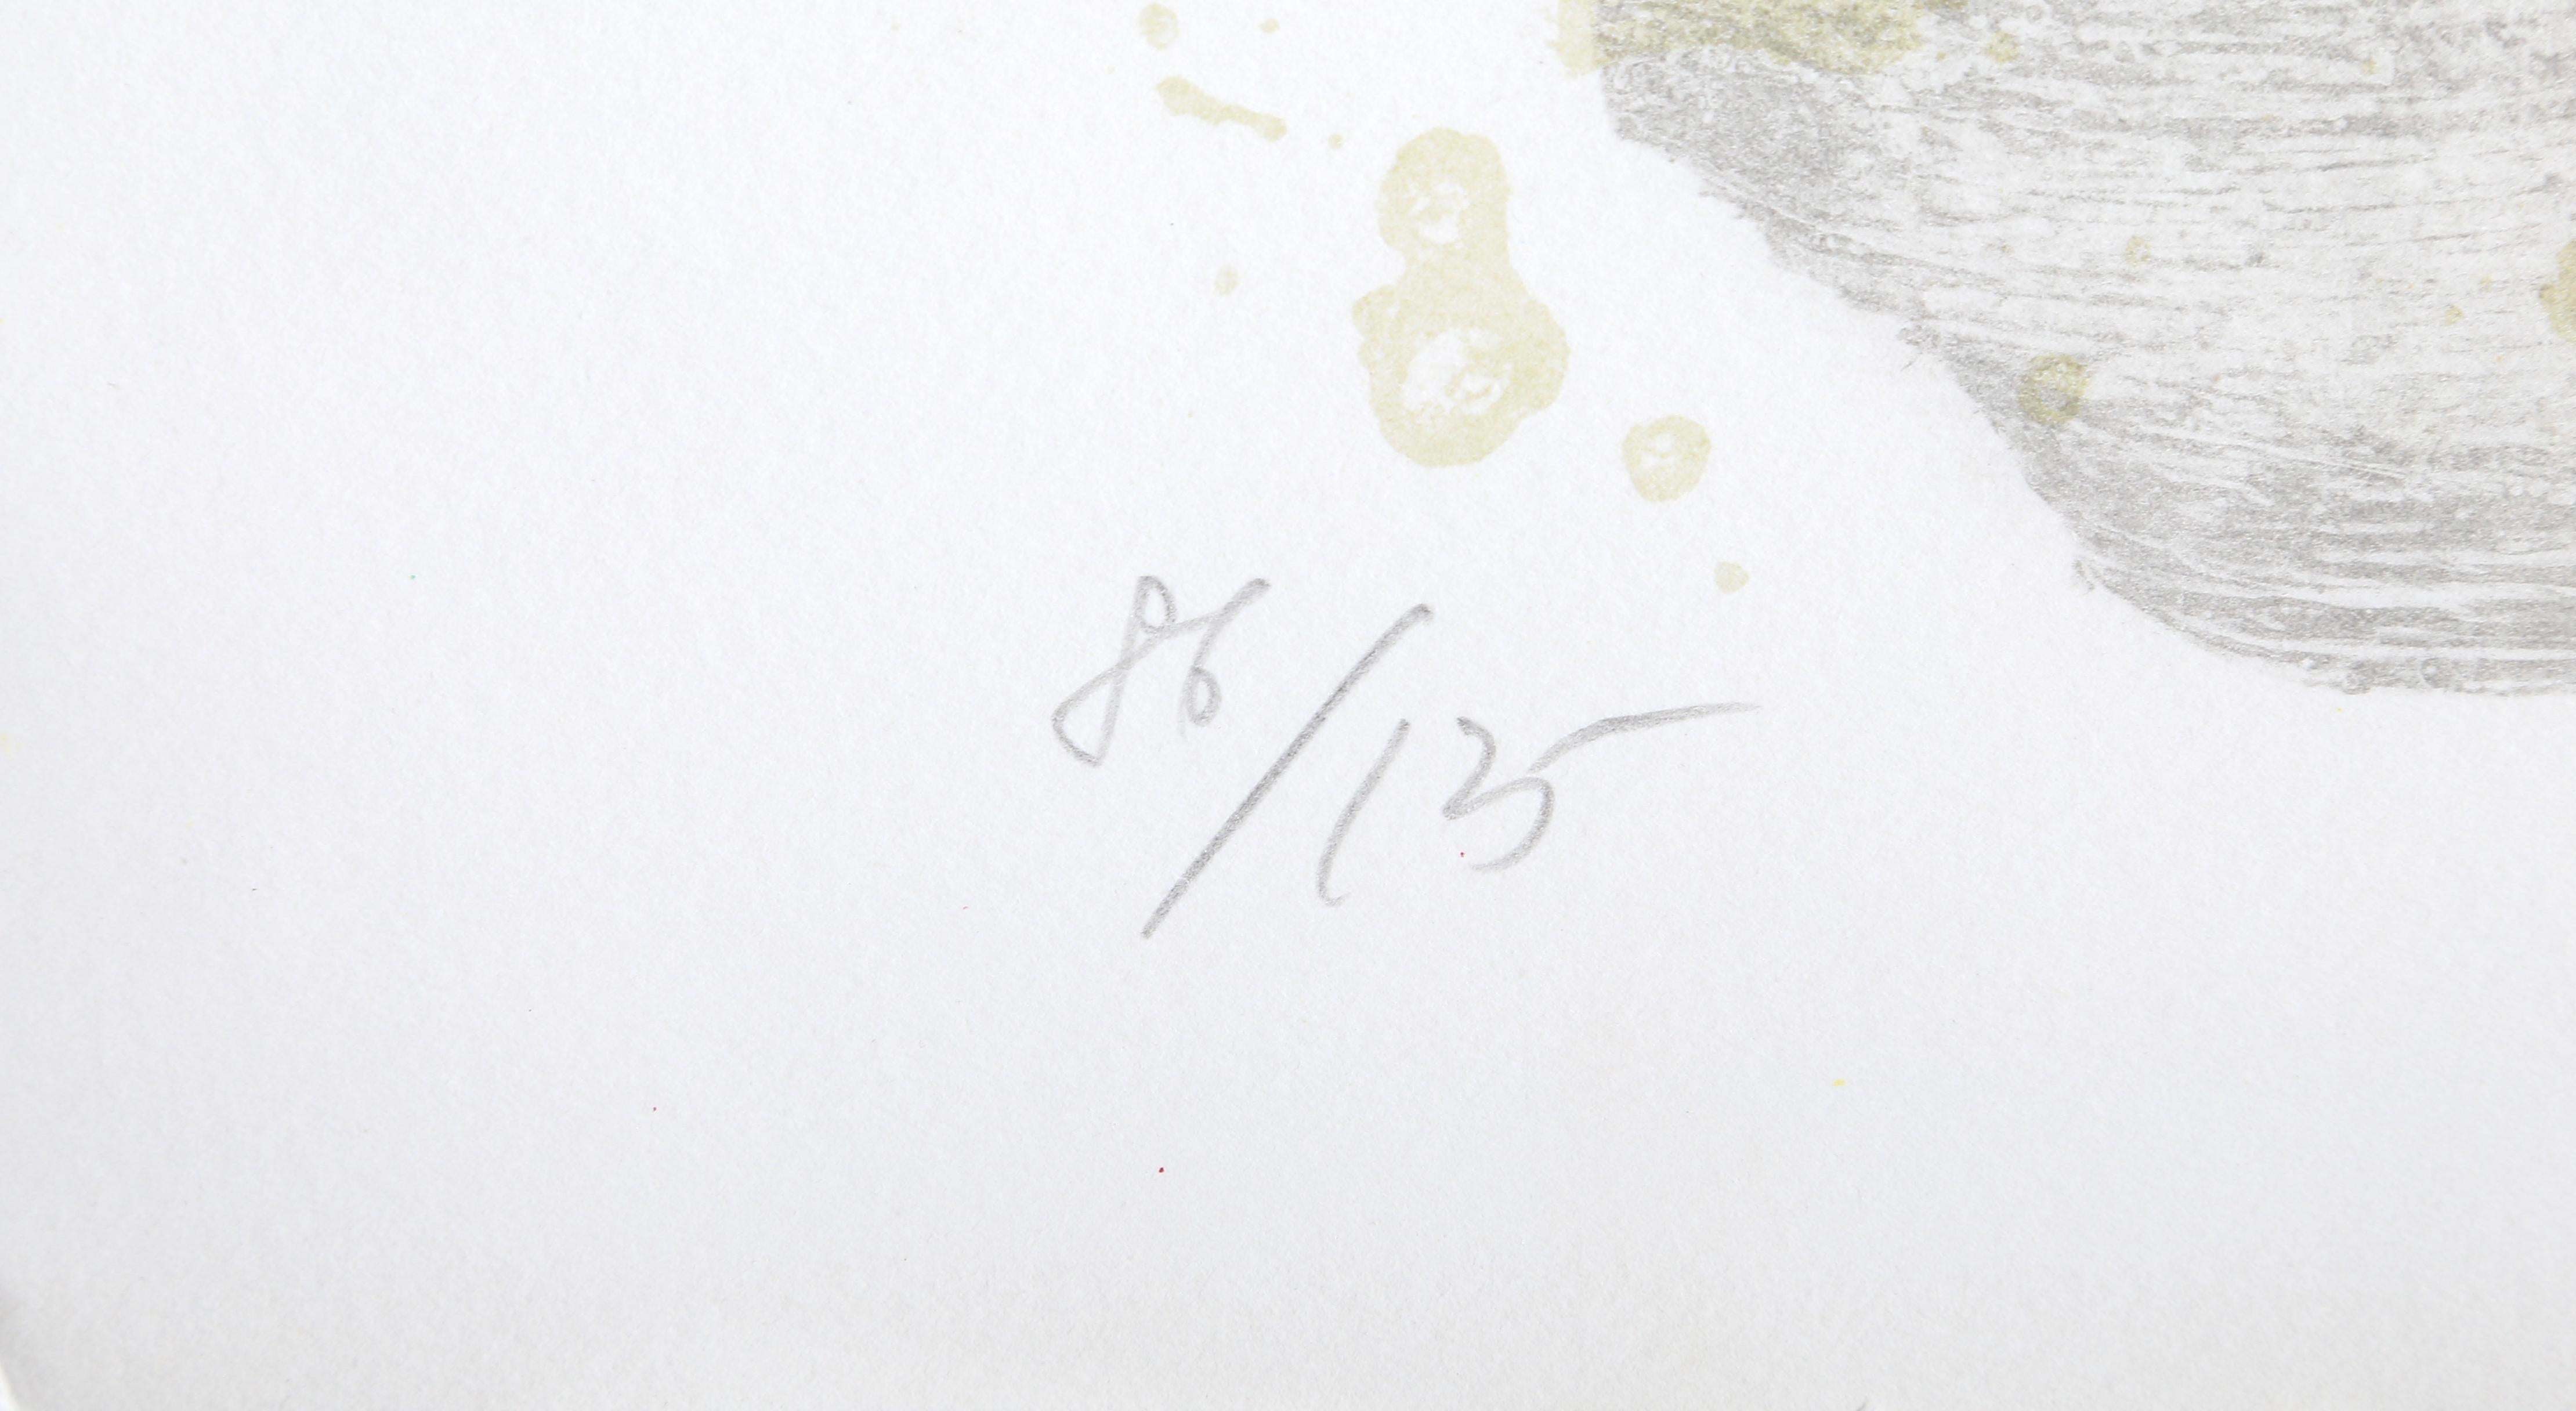 Artiste :  Theo Tobiasse, Français (1927 - 2012)
Titre :  Rachel
Année :  1984
Moyen :  Lithographie, signée et numérotée au crayon
Edition :  86/125
Image : 38 x 26 pouces
Taille :  42 x 28.5 in. (106.68 x 72.39 cm)
Taille du cadre :  46,5 x 33,5